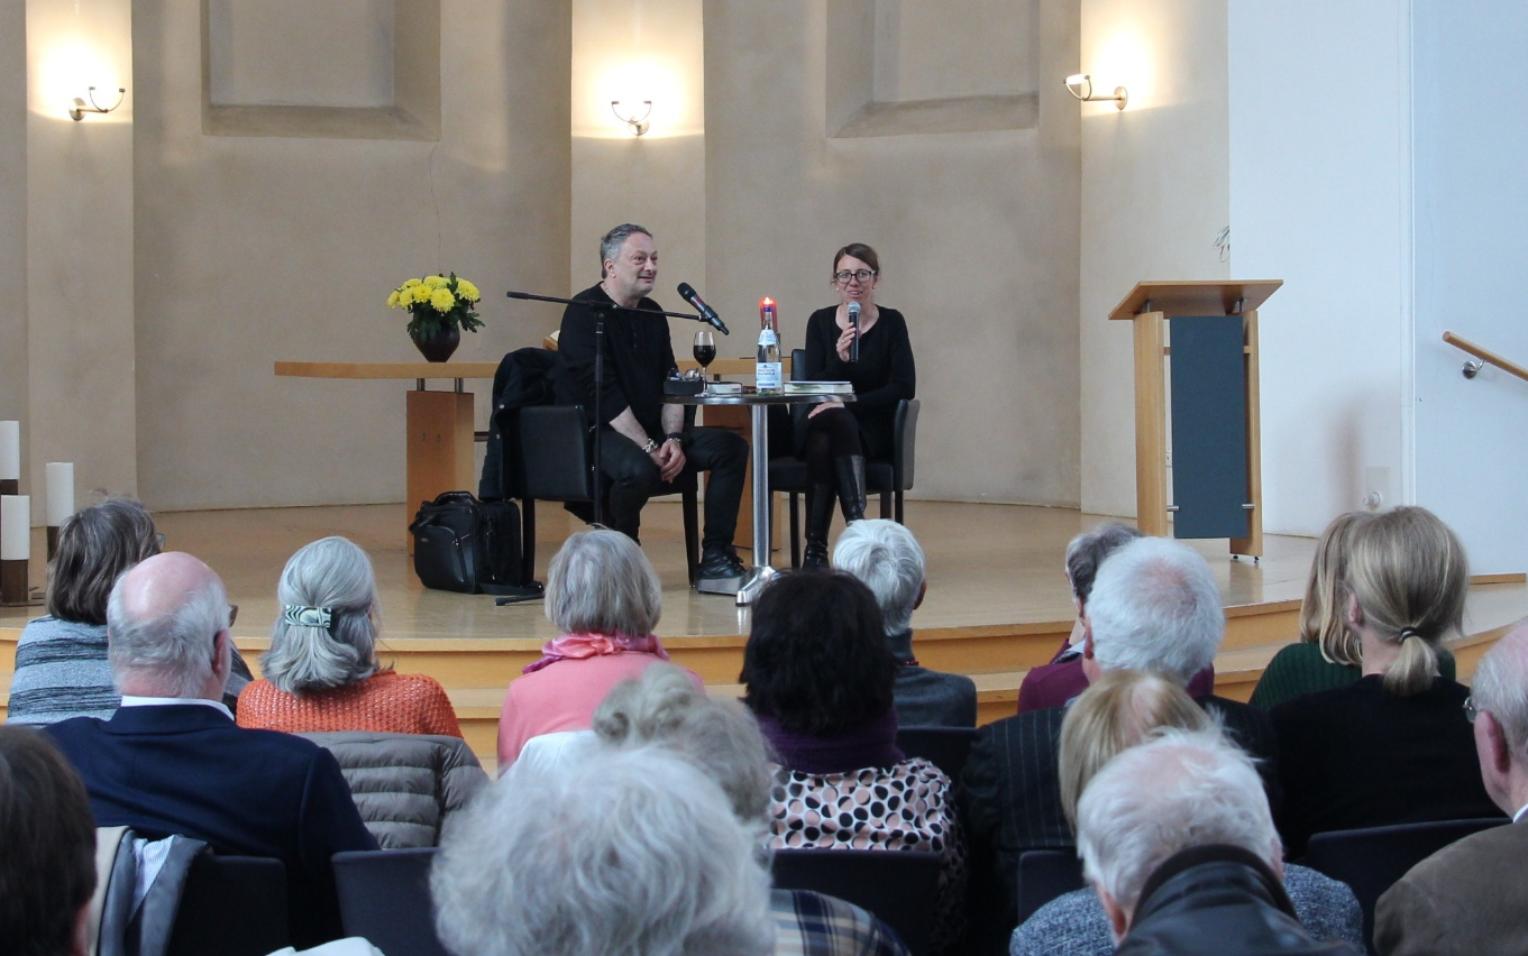 Feridun Zaimoglu im Interview mit Katja Schettler anlässlich einer Lesung in der Citykirche Wuppertal